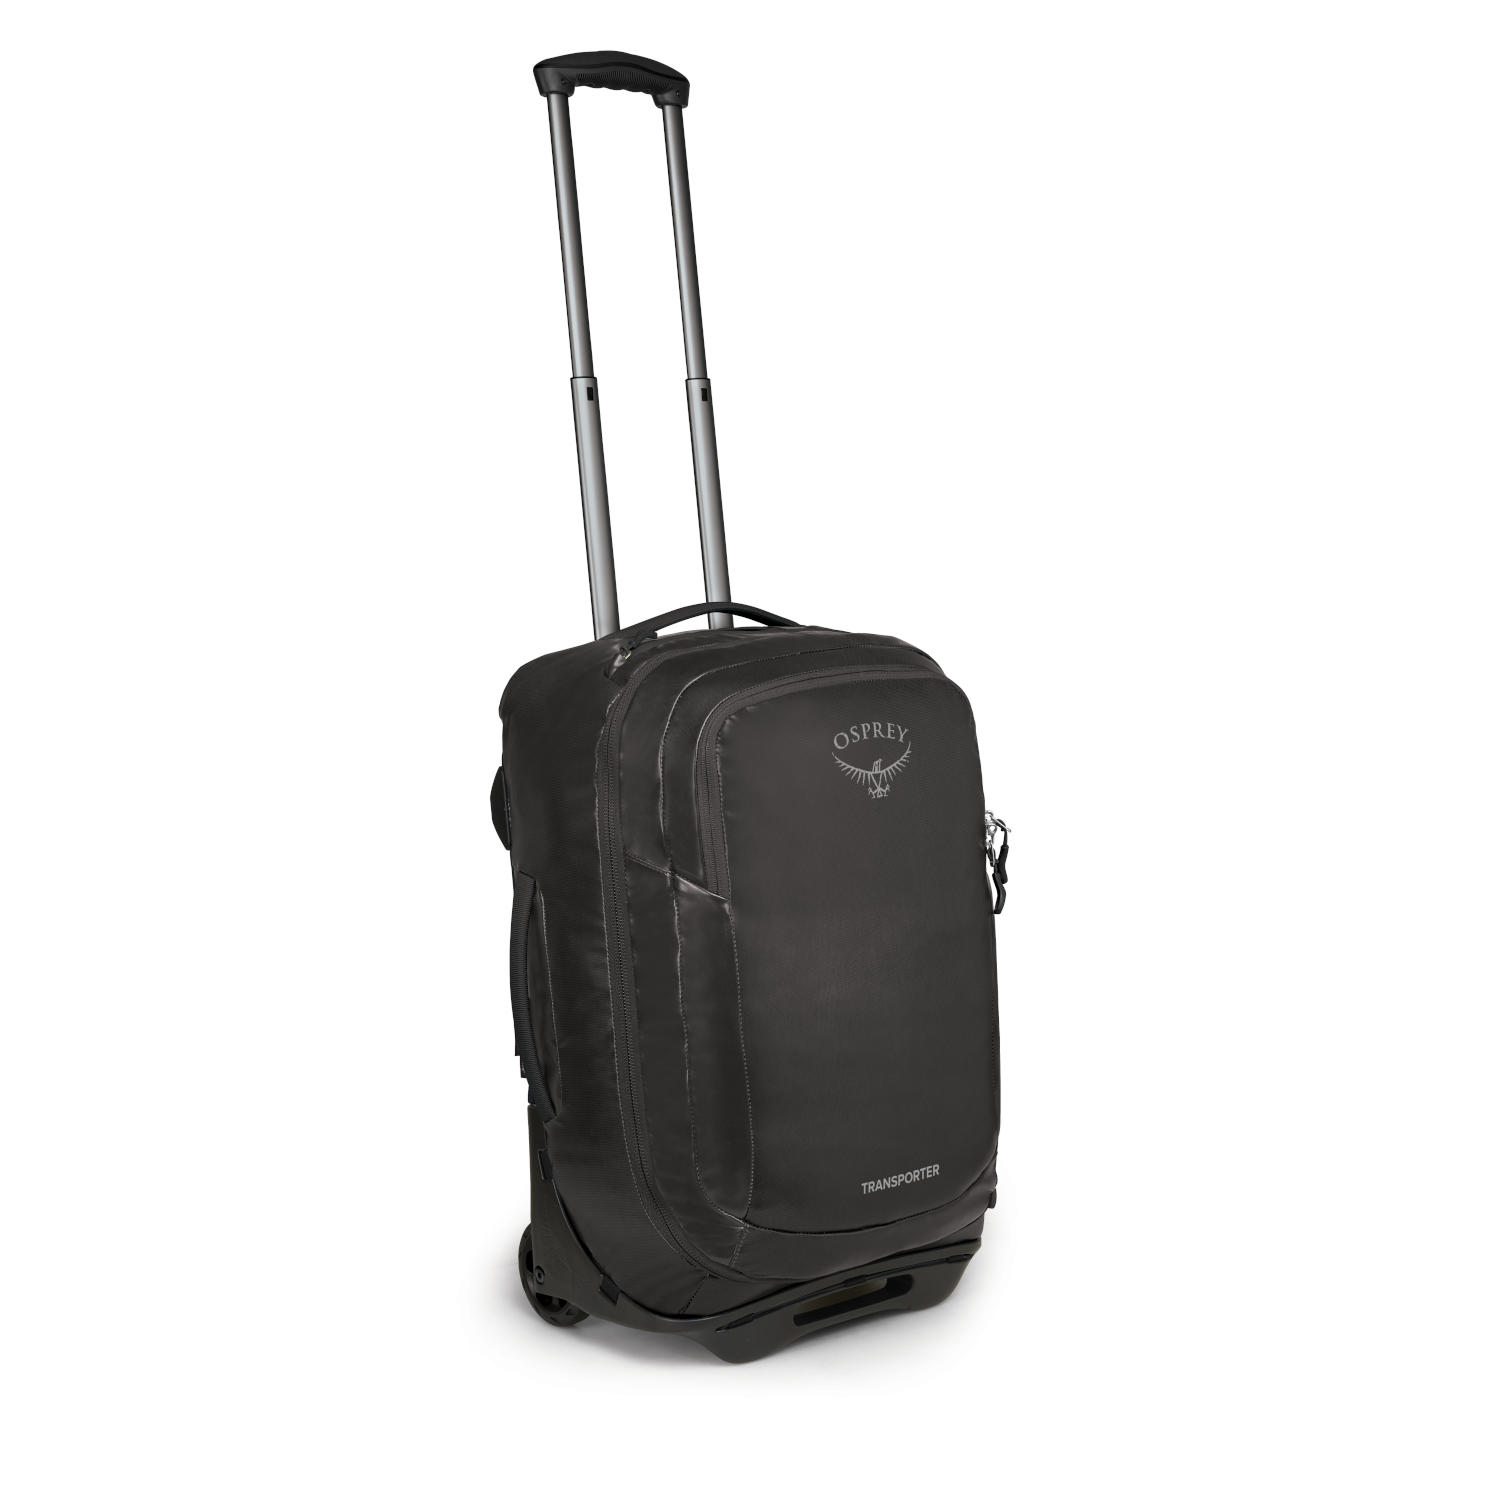 Produktbild von Osprey Rolling Transporter Carry-On Reisetasche - Black